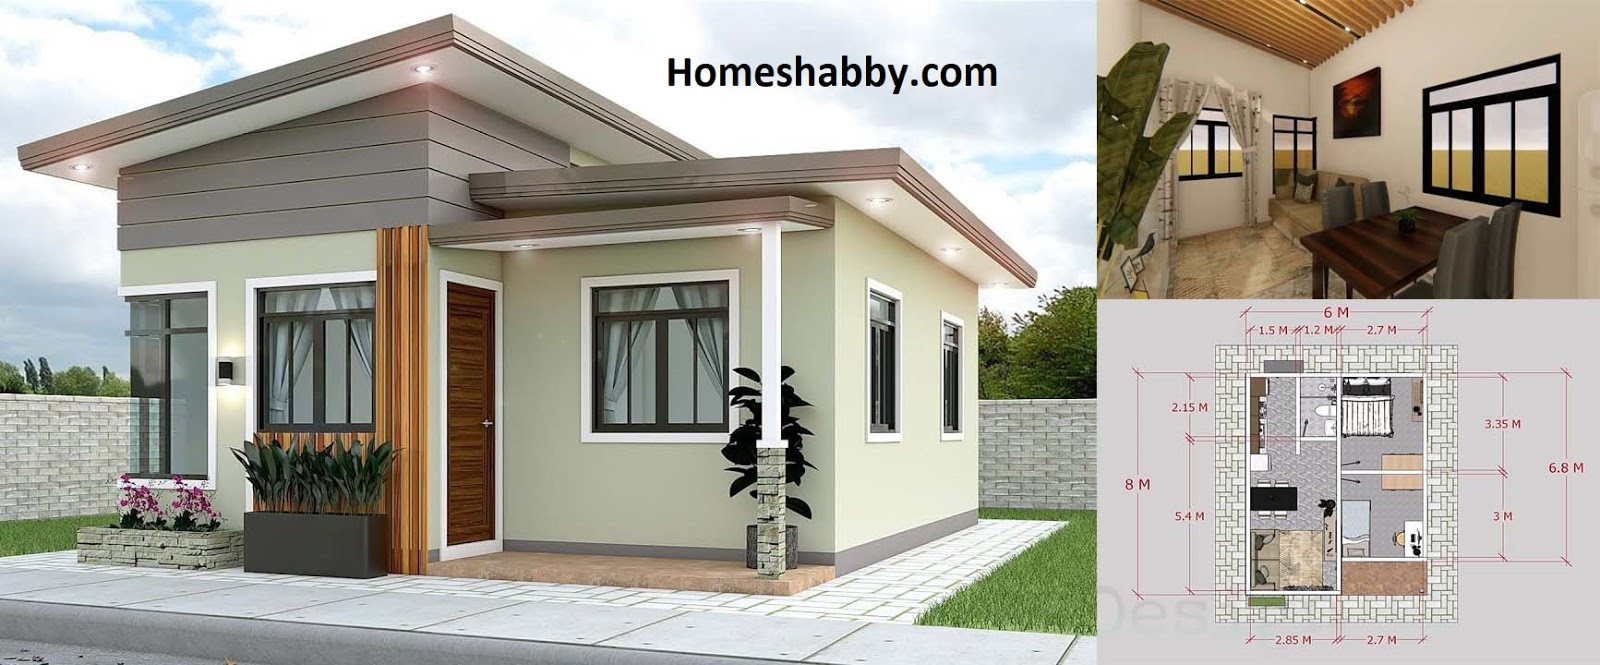 Desain Dan Denah Rumah Minimalis Kontemporer Ukuran 6 X 8 M Dengan Eksterior Keren Homeshabbycom Design Home Plans